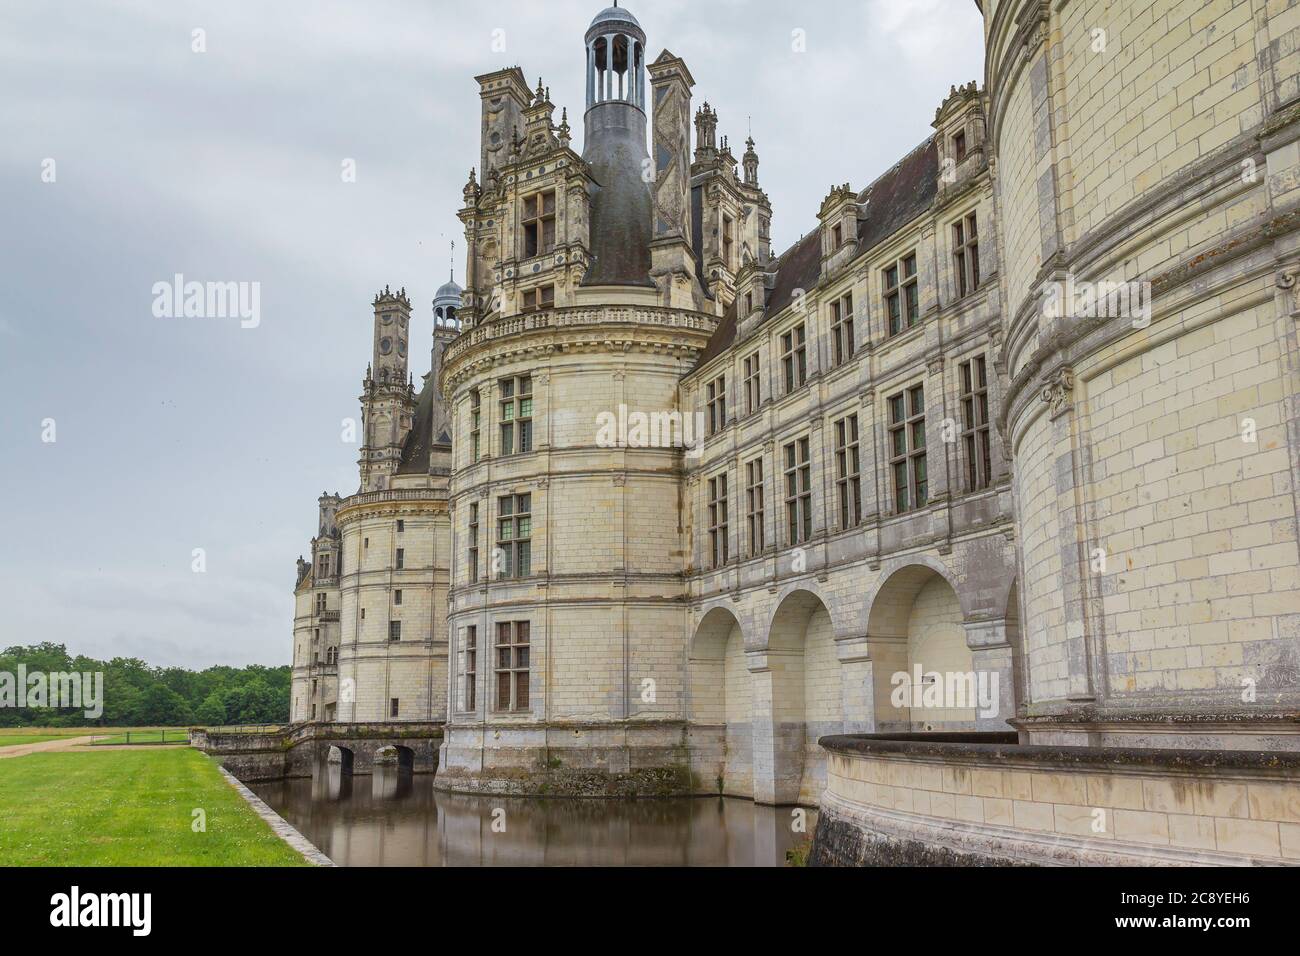 Nuvole scure e scenografia drammatica su Chateau Chambord . Castello con architettura rinascimentale francese molto distintiva Foto Stock